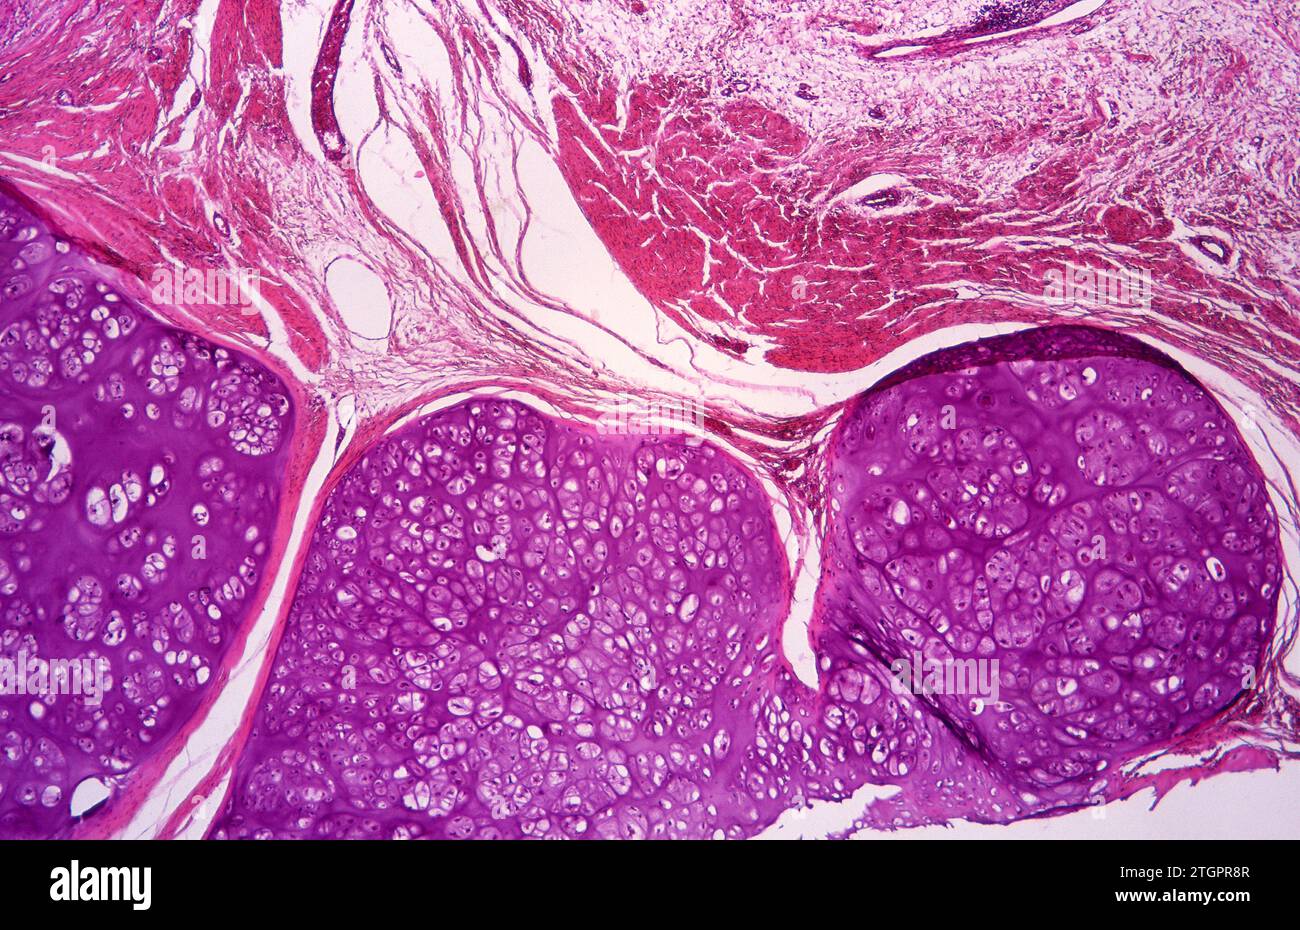 Chondroma sur l'os pubien. Chondroma est une tumeur cartilagineuse bénigne. Photomicrographe. Banque D'Images